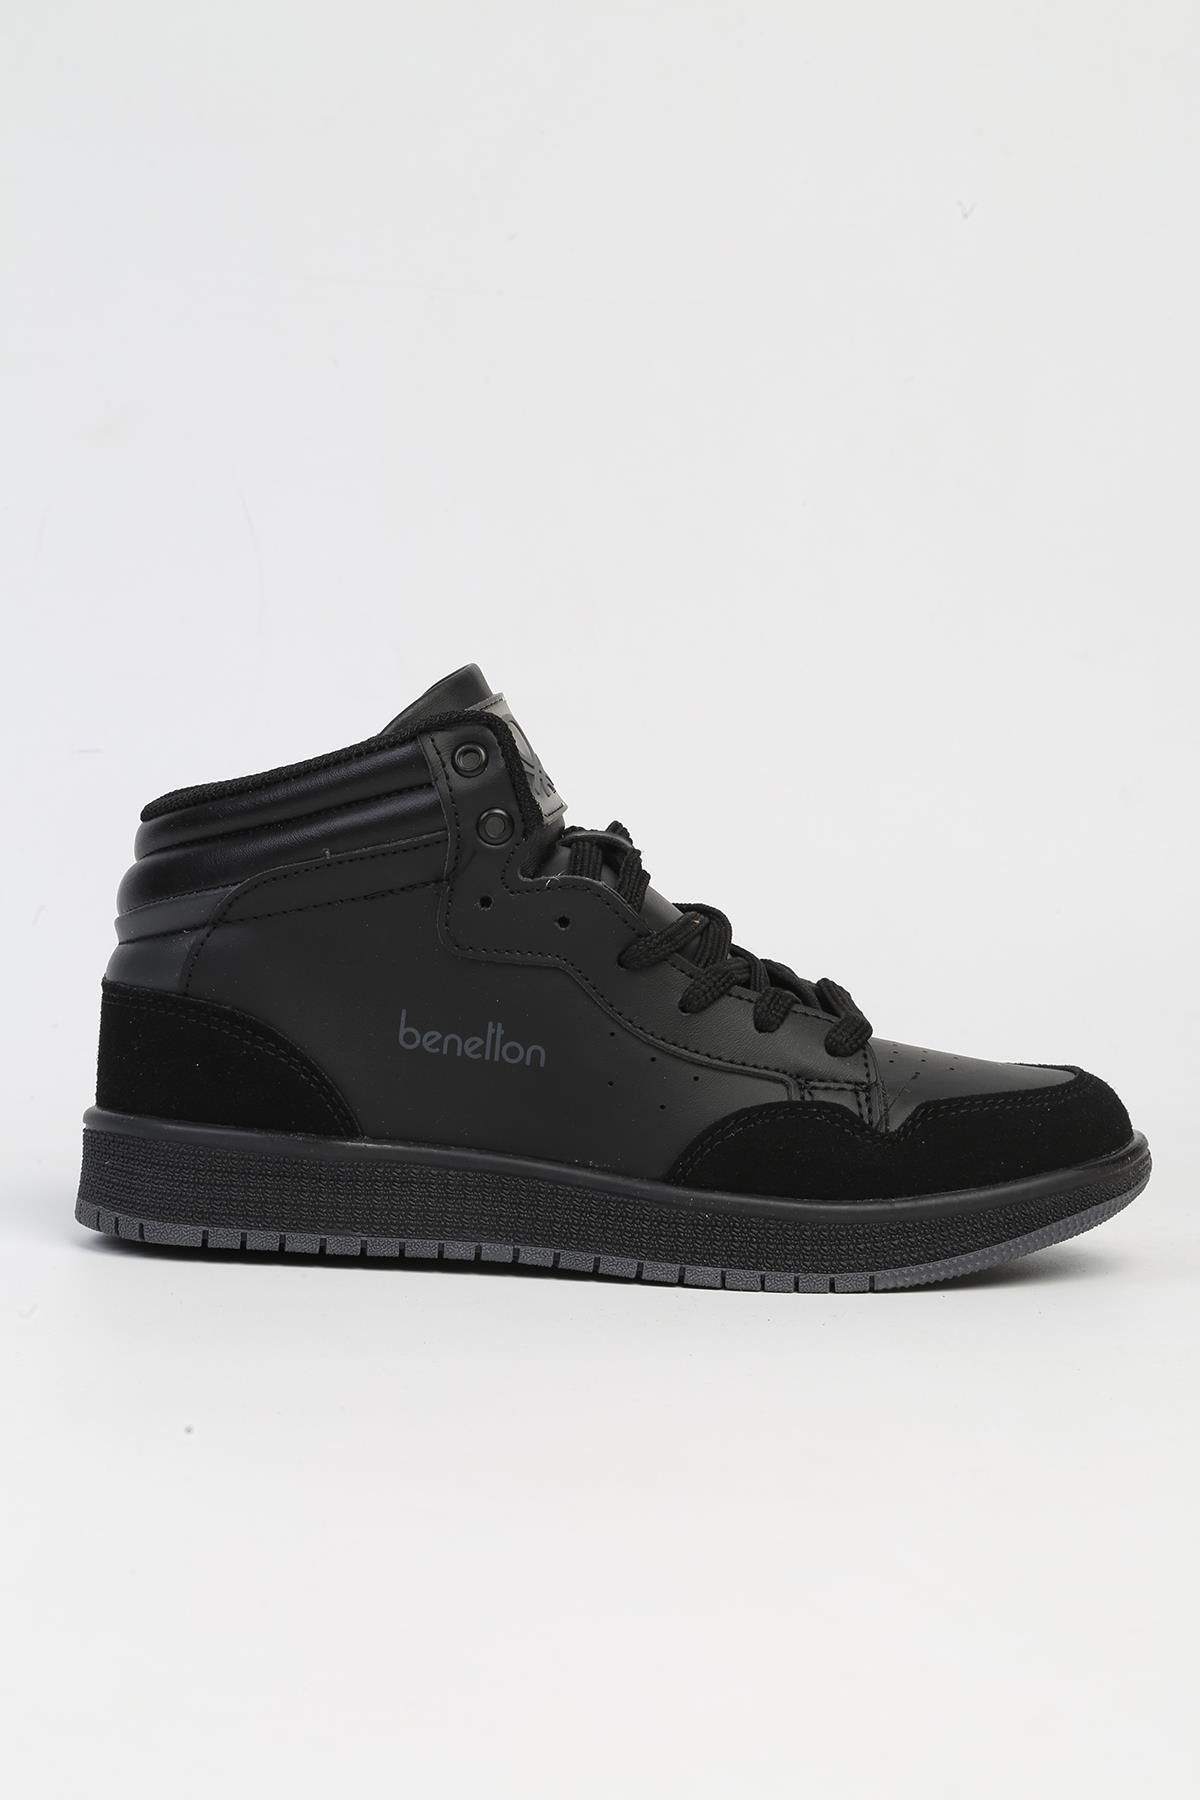 Benetton ® | BN-30868-Siyah- Kadın Spor Ayakkabı